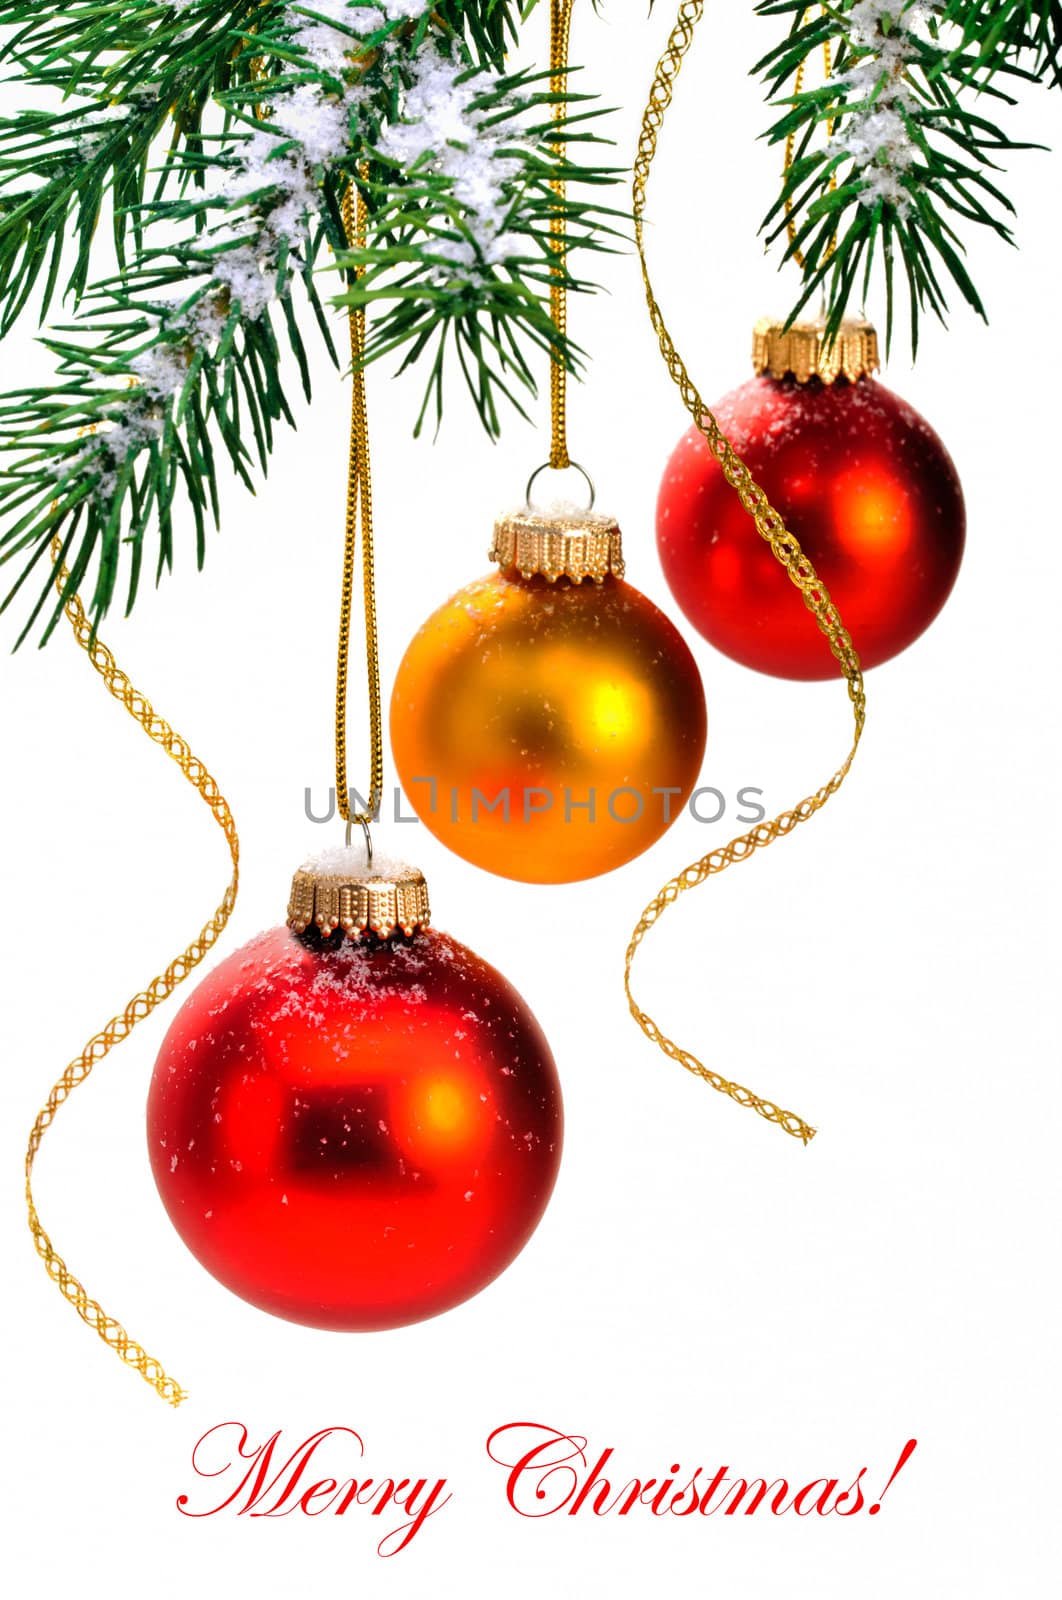 Christmas balls hanging on the Christmas tree.